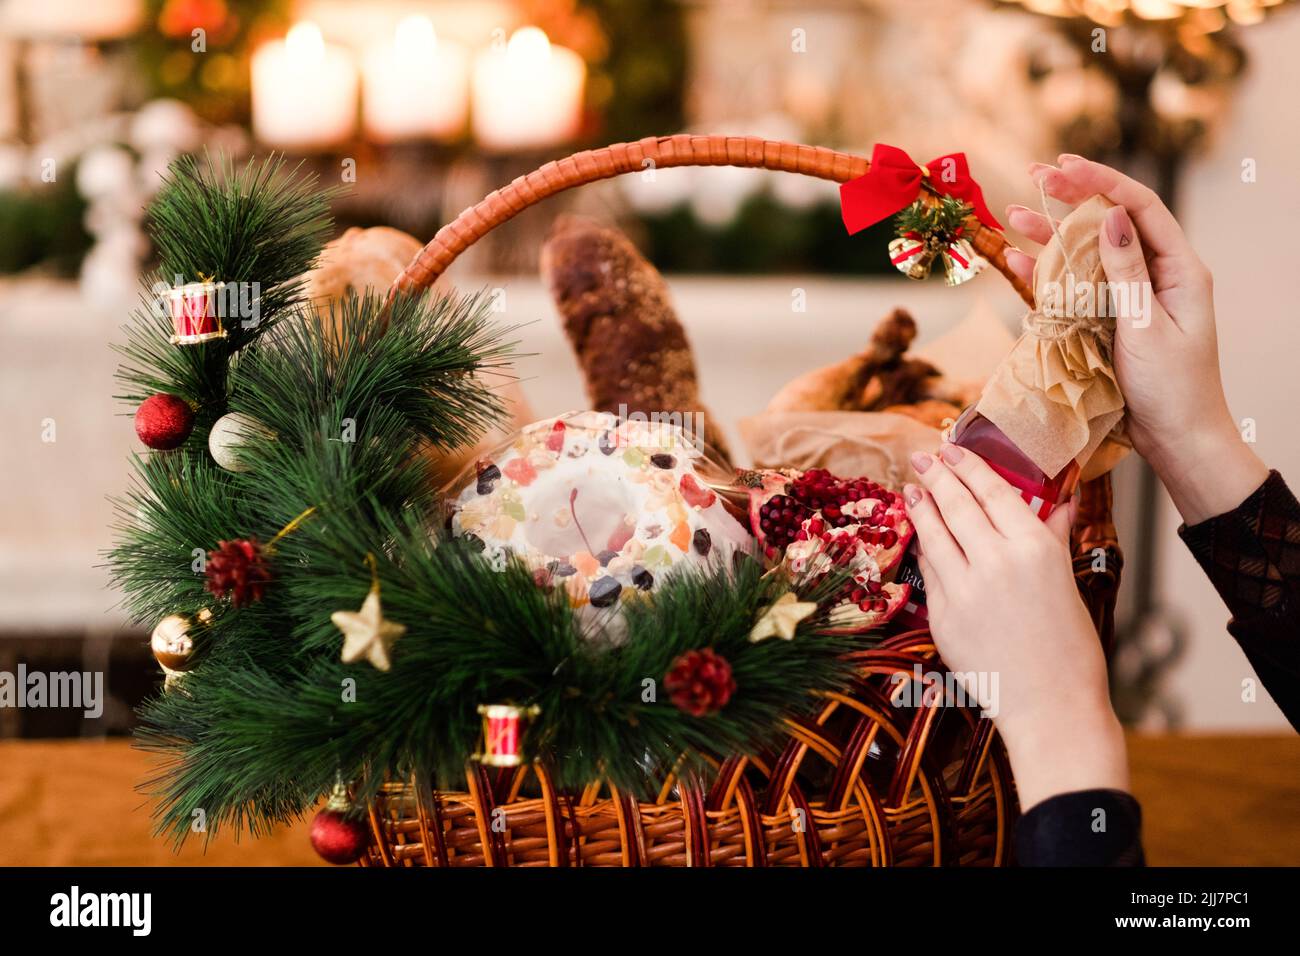 Christmas goods basket holiday food Stock Photo